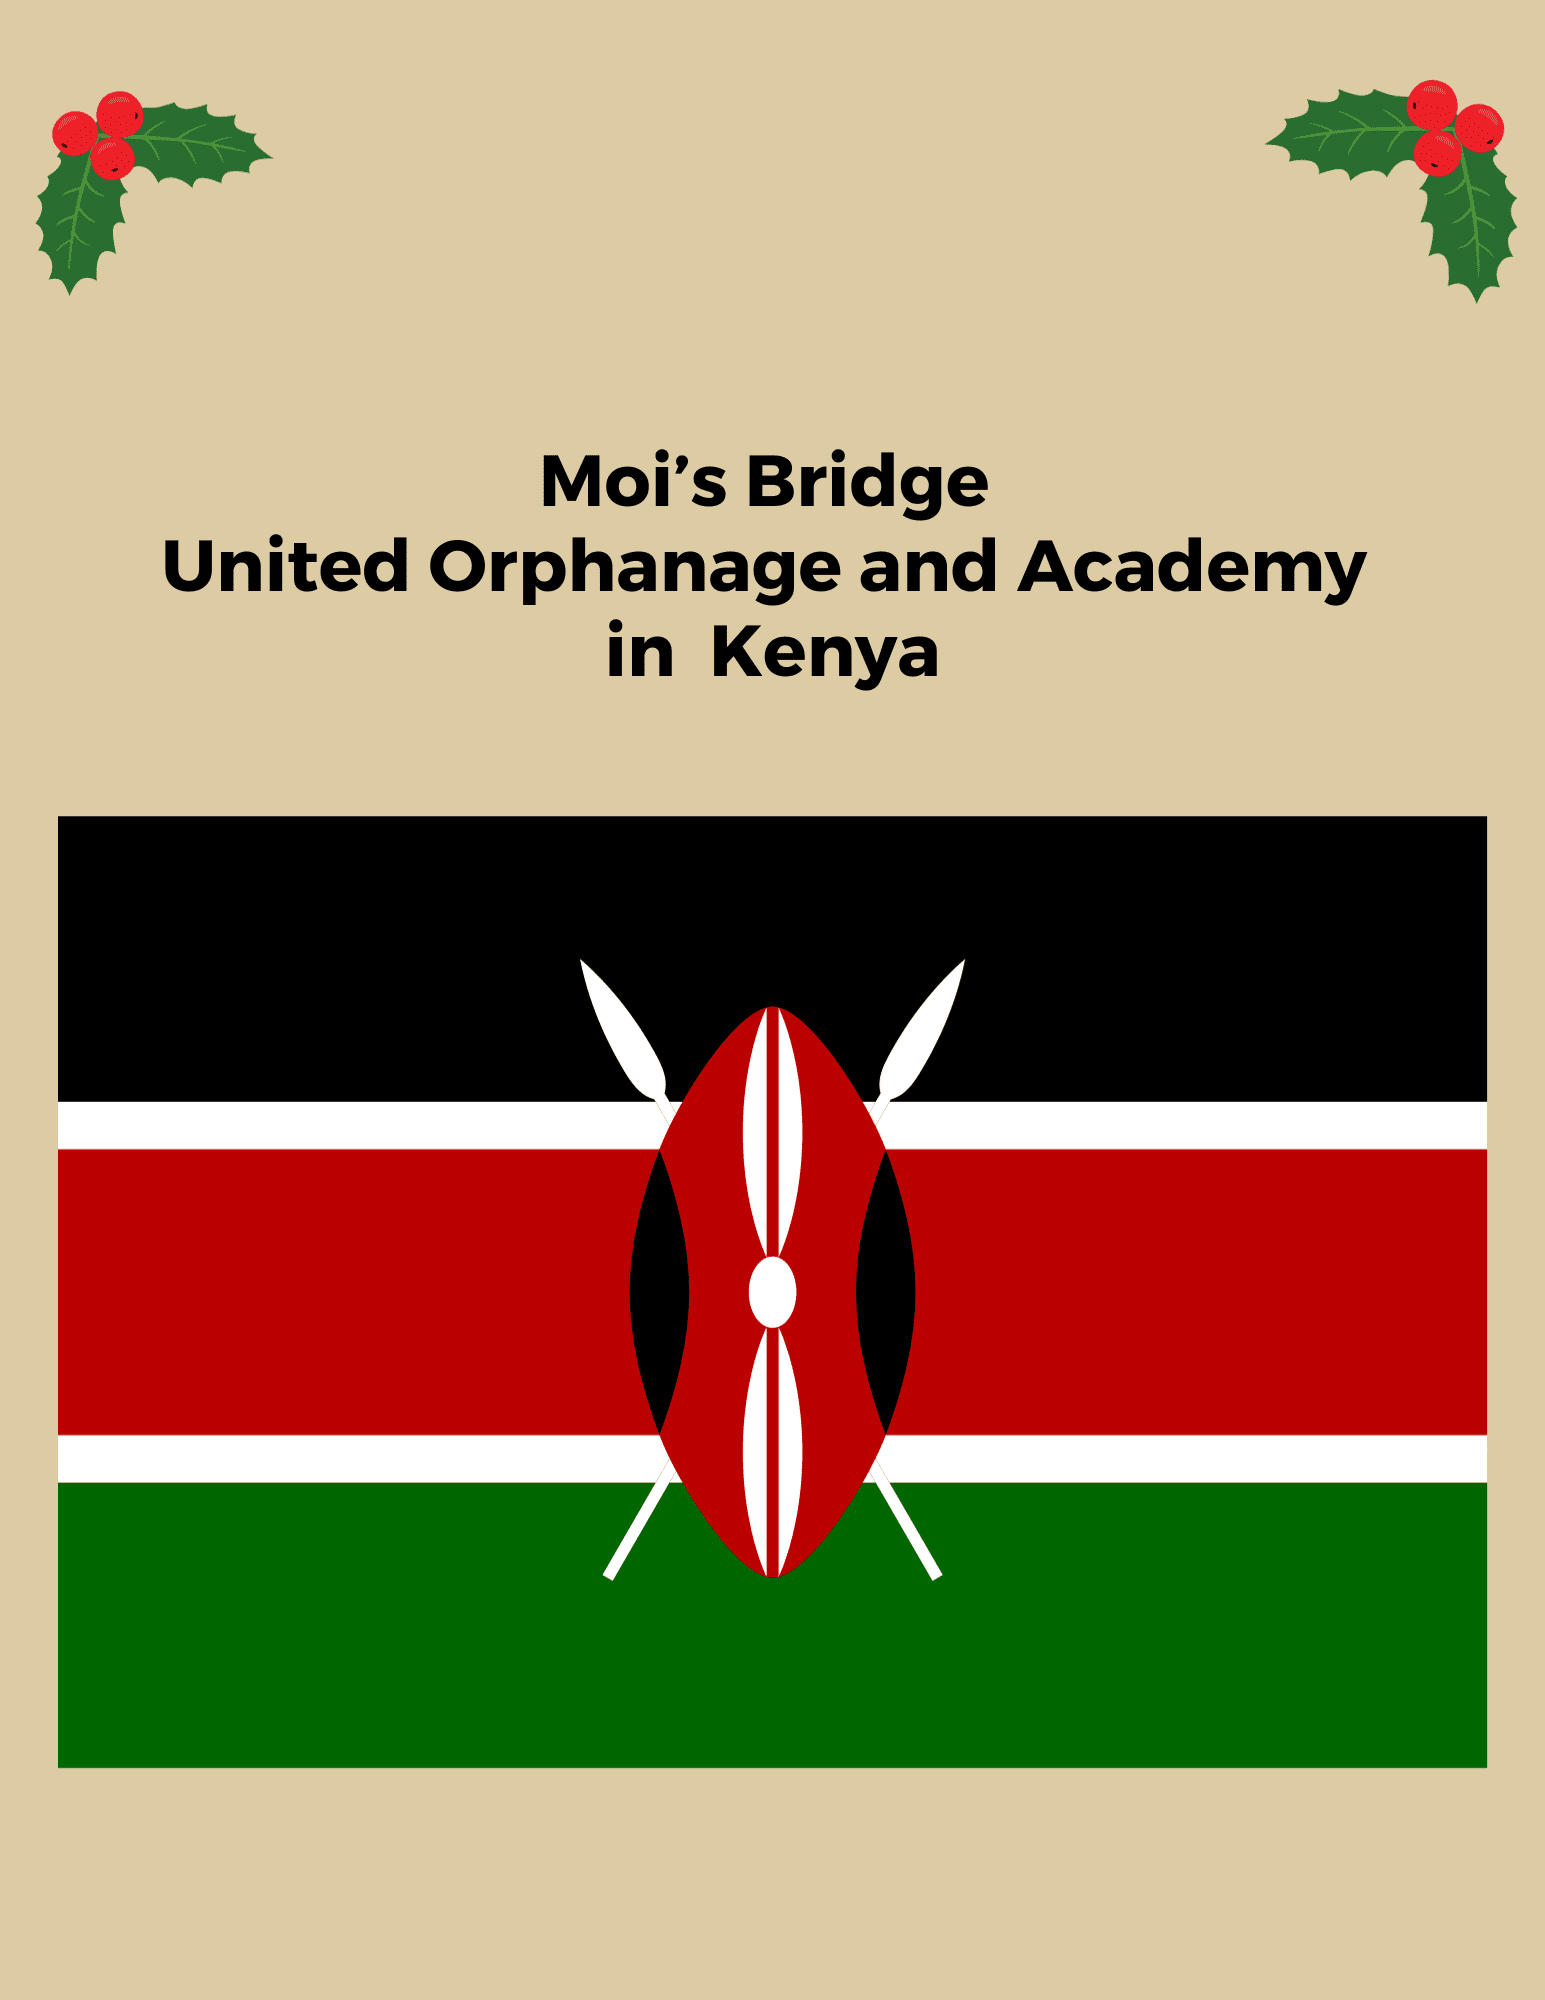 AG Kenya Moi's Bridge 8.5 x 11